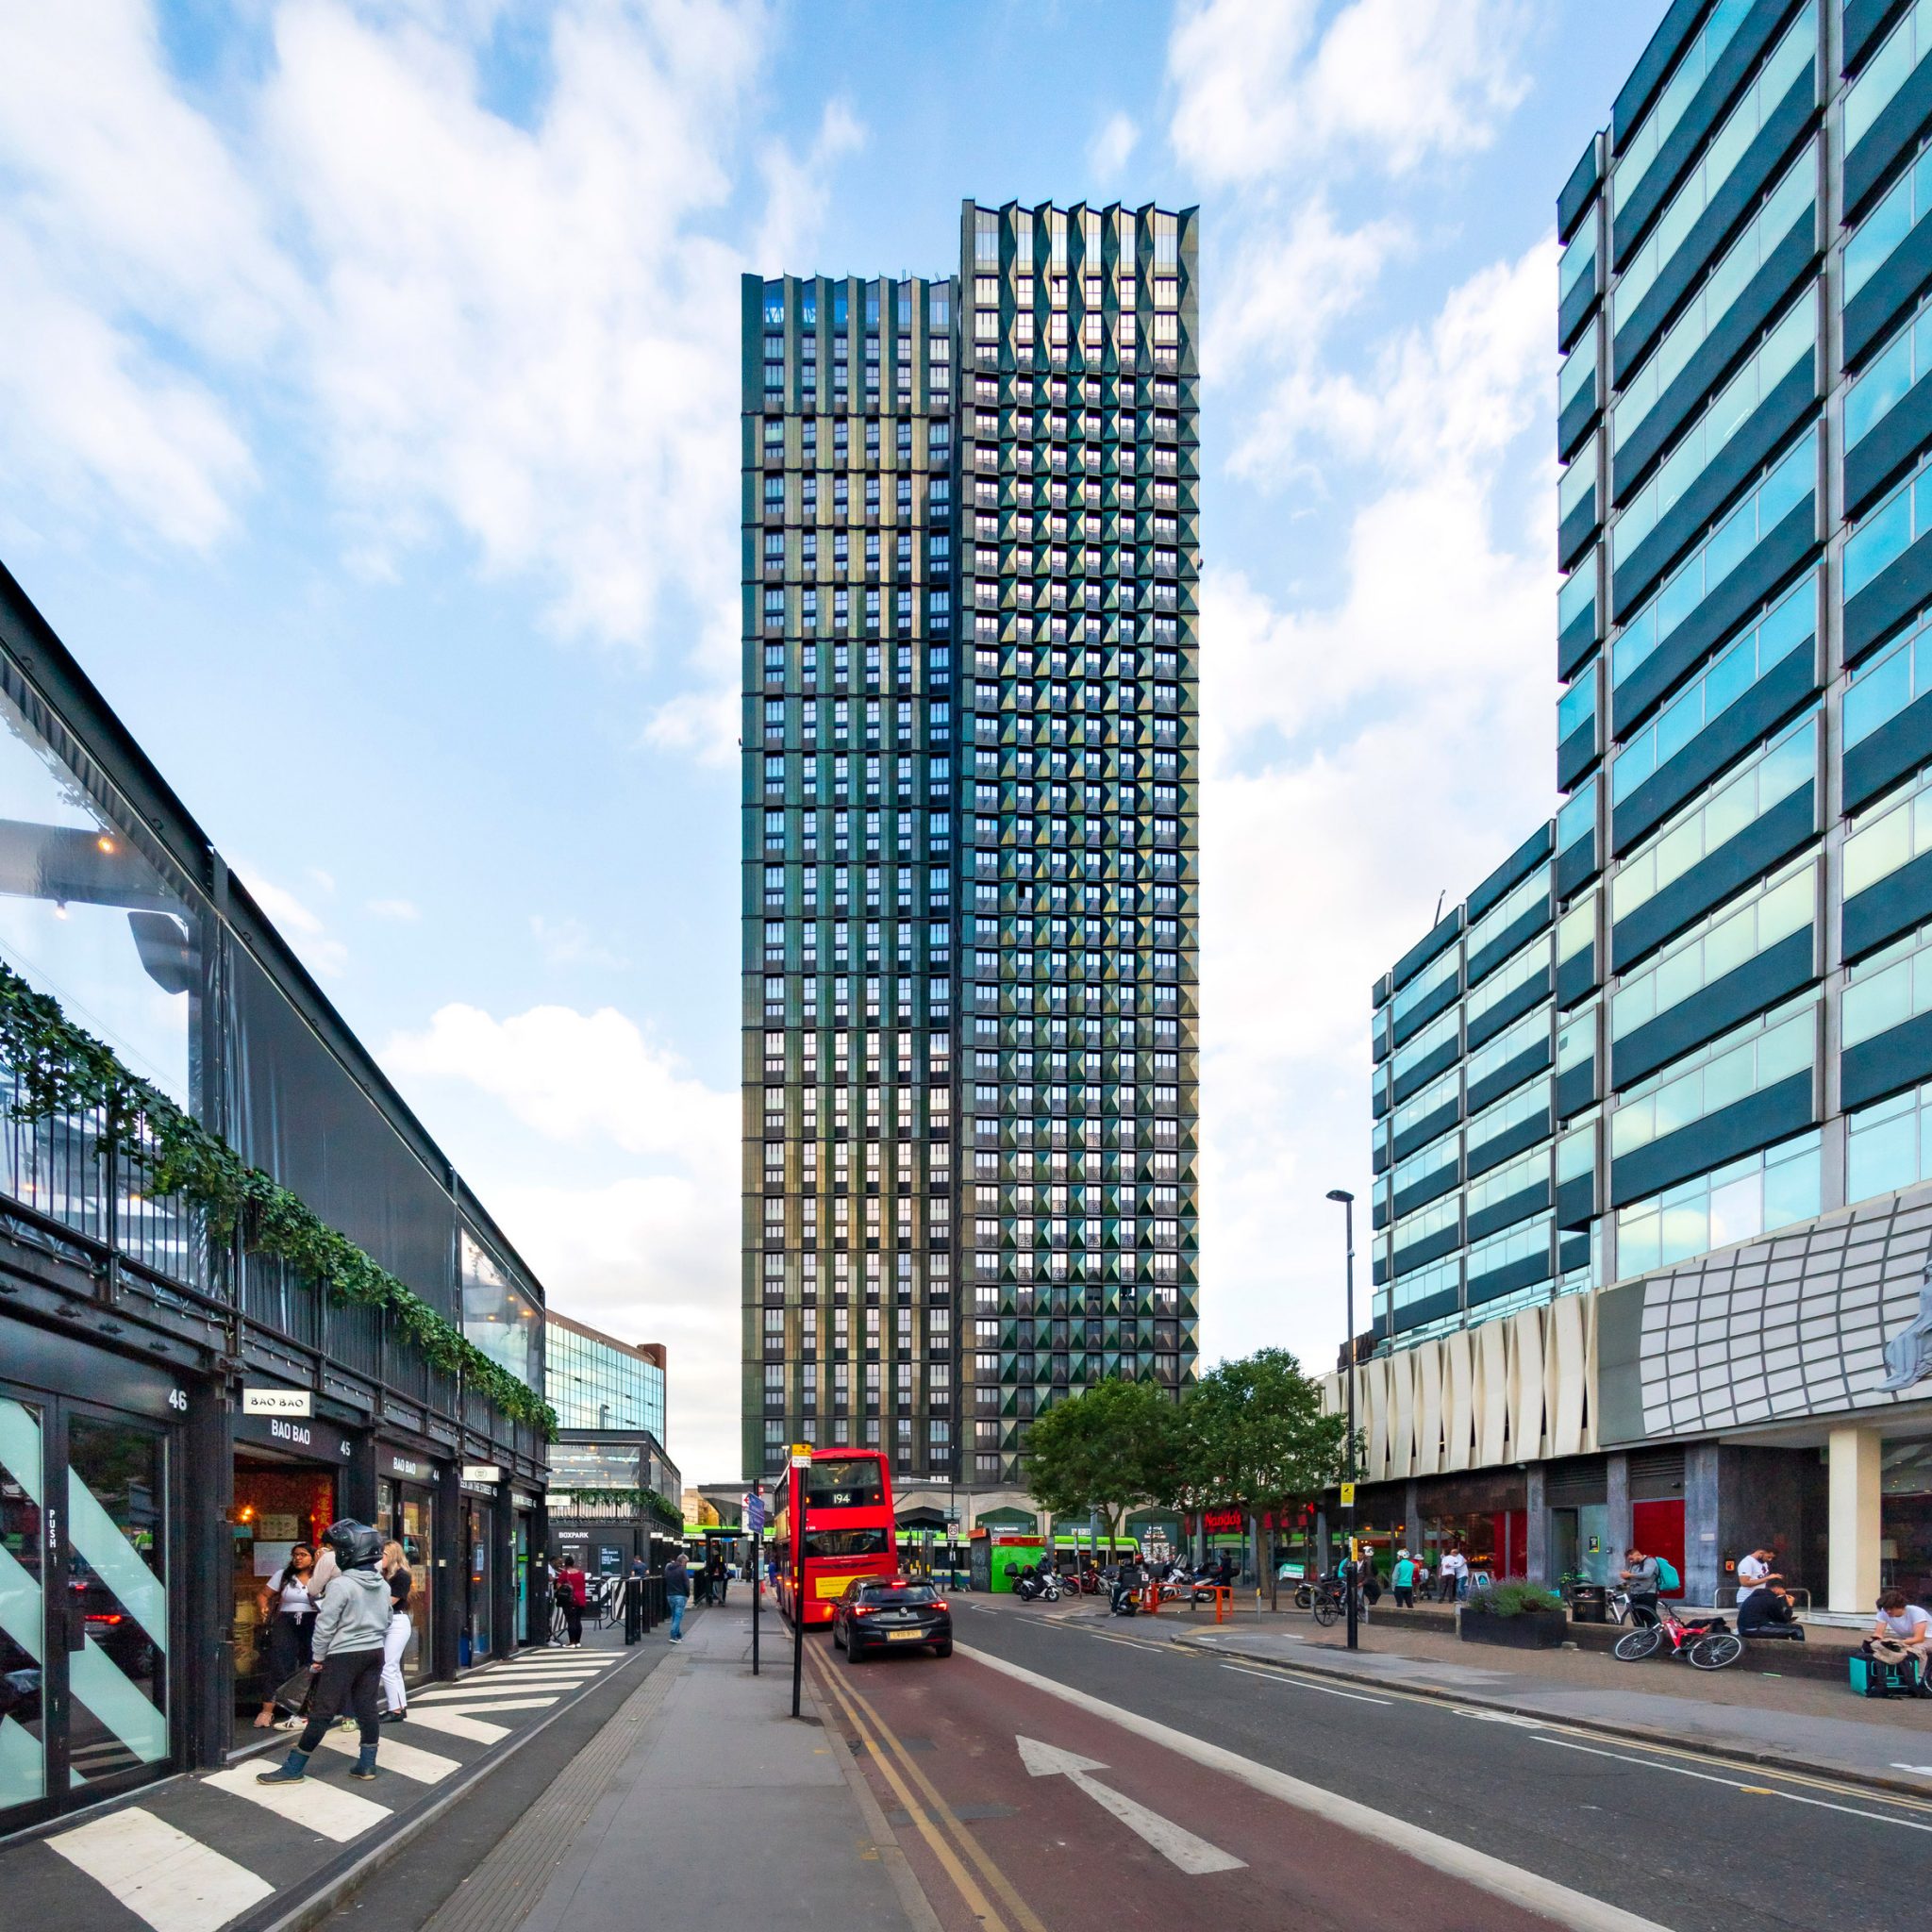 A világ legmagasabb moduláris lakóparkja épül Londonban